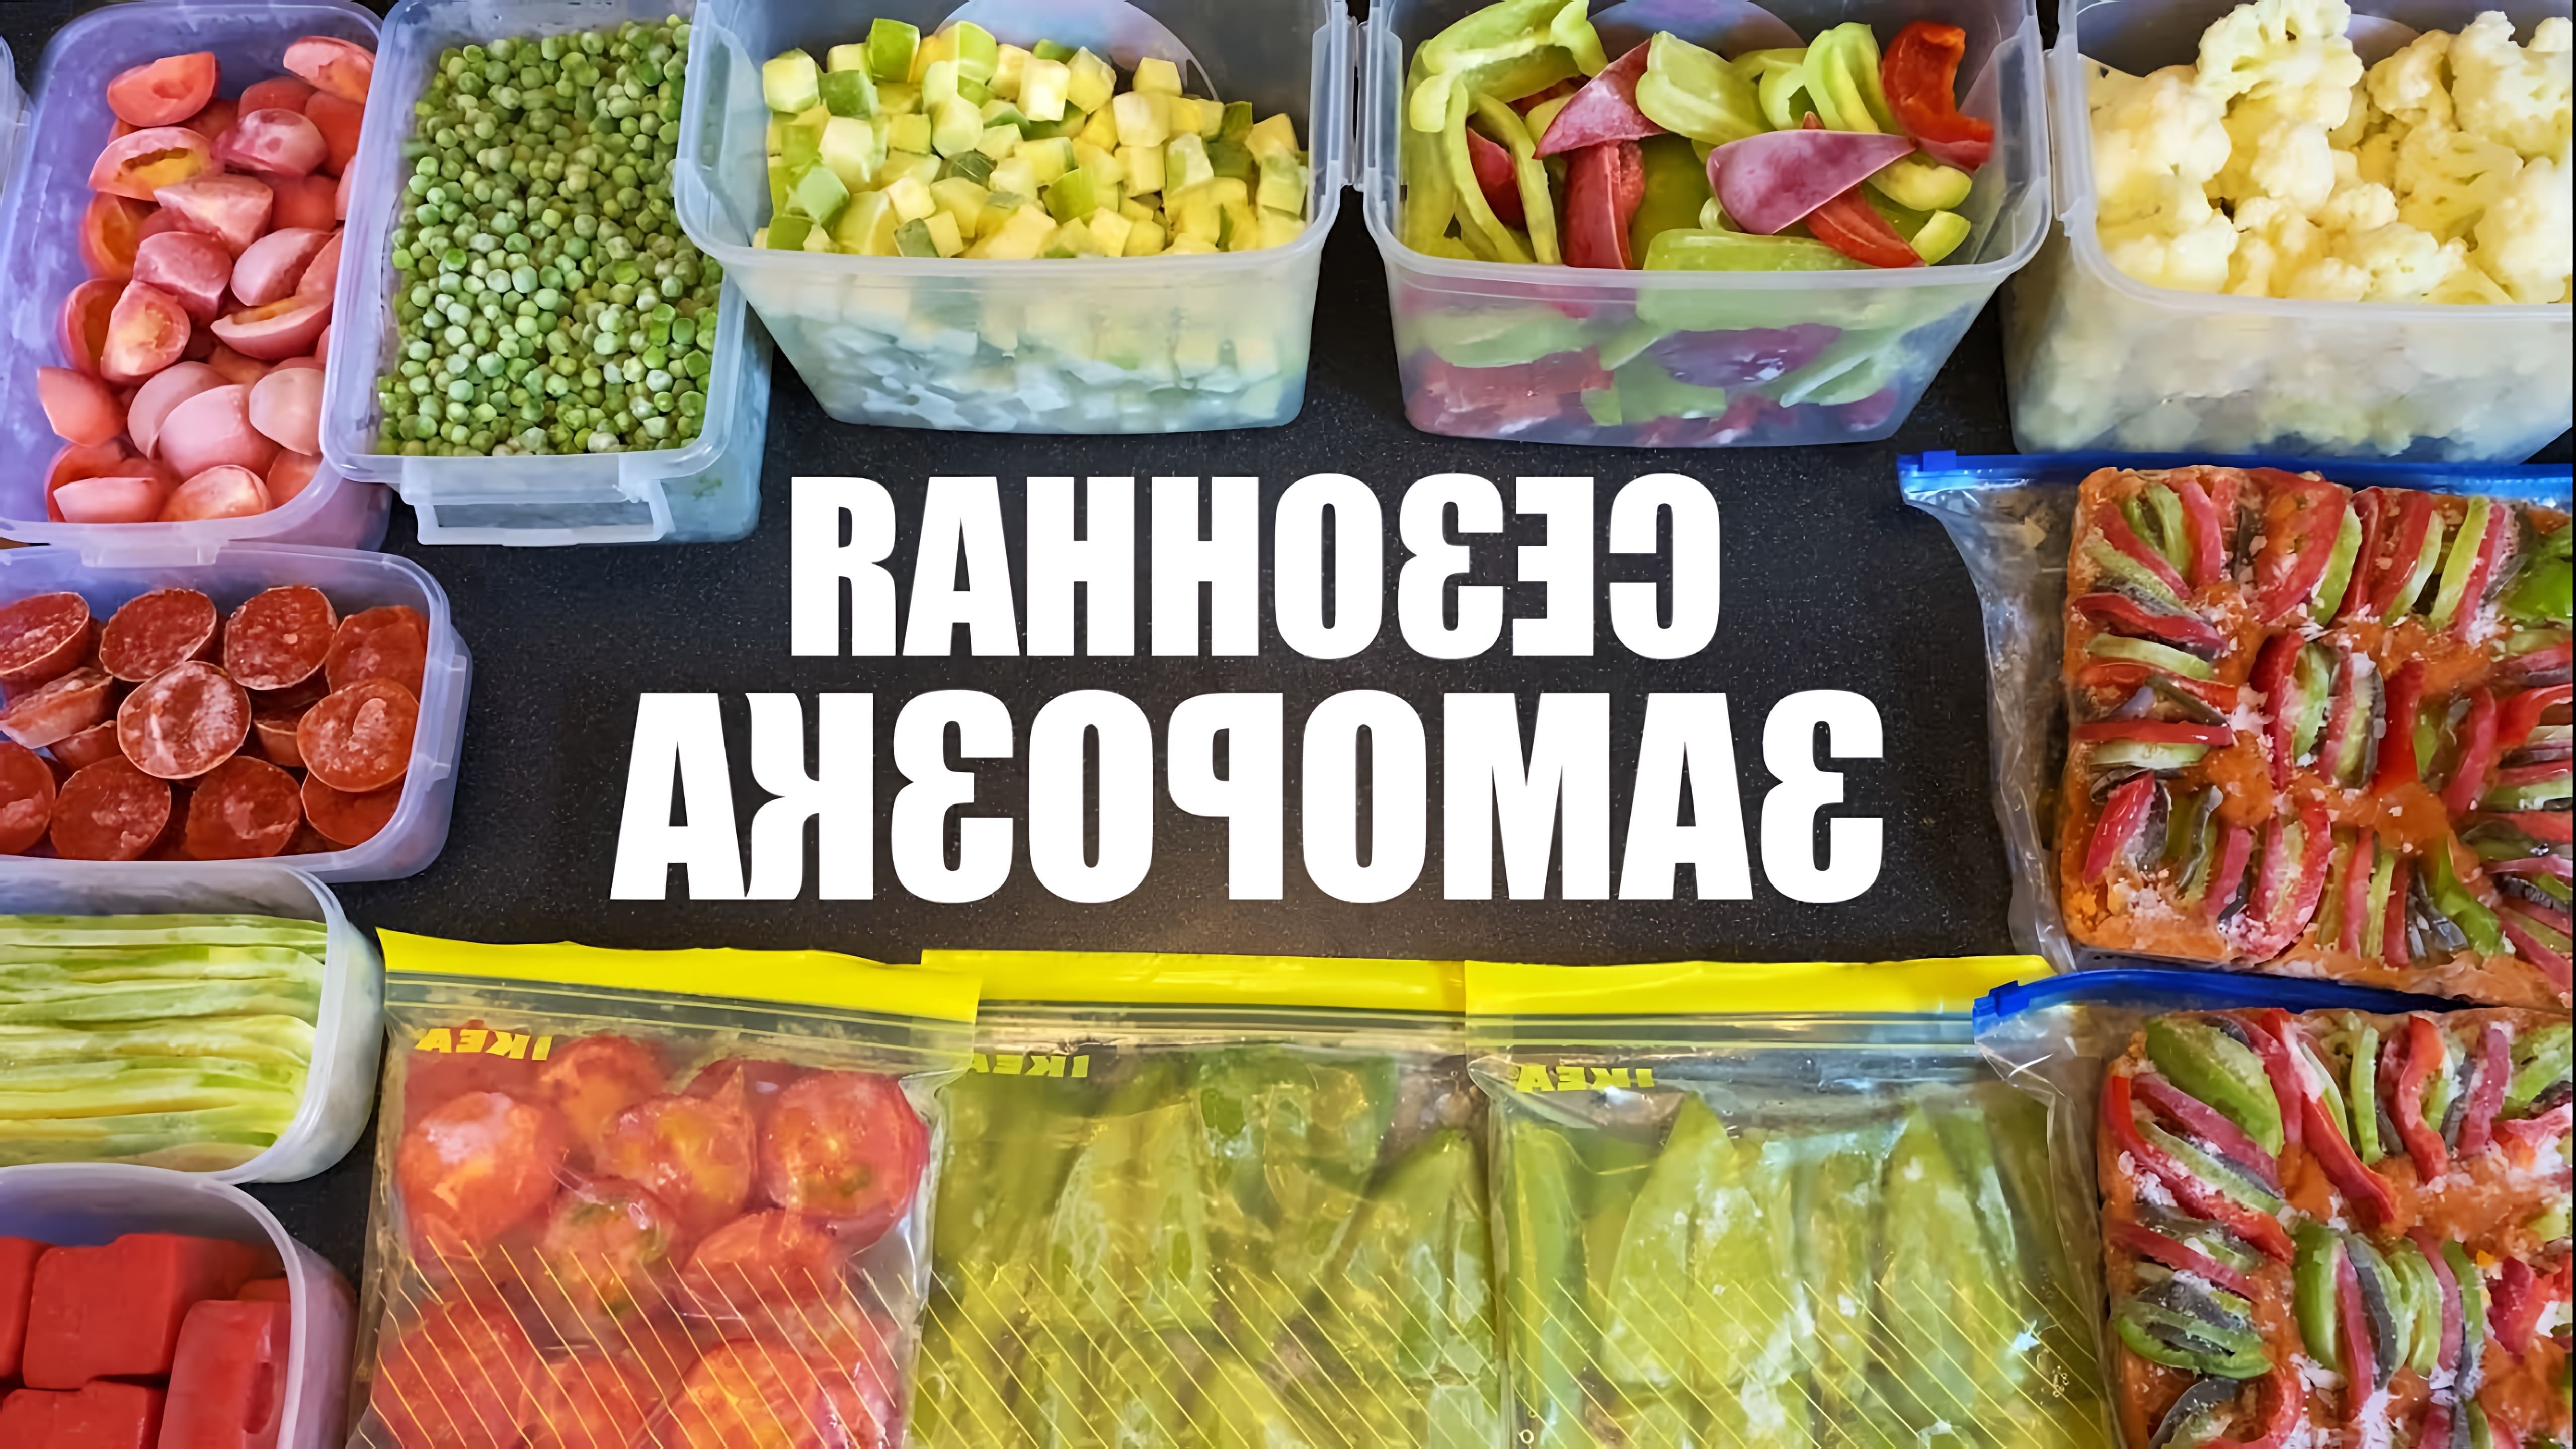 Видео рассматривает методы замораживания различных овощей для зимнего использования, включая болгарский перец, зеленую фасоль, цуккини, капусту, помидоры и рагу из овощей